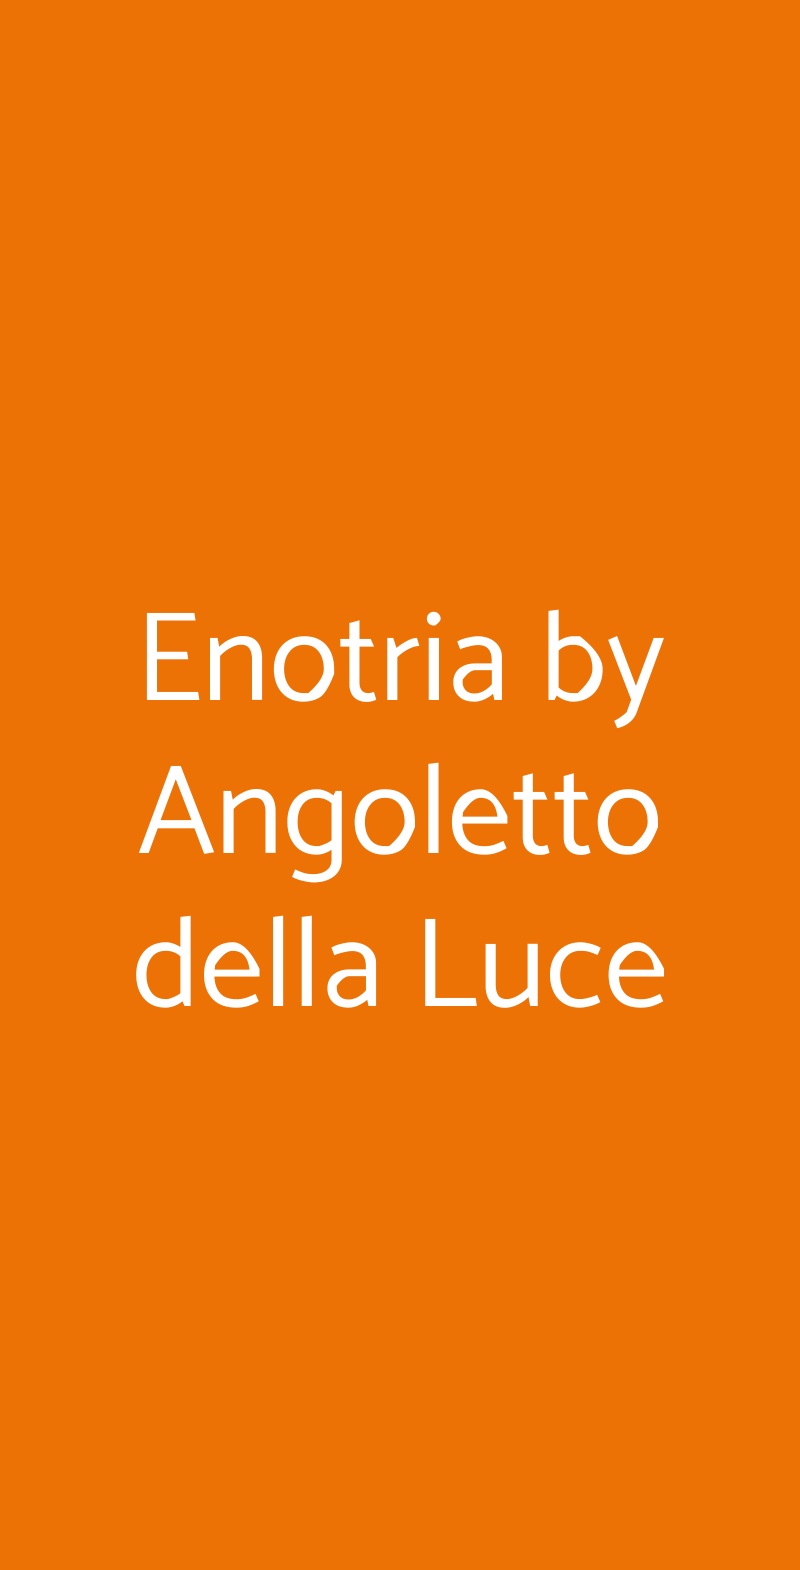 Enotria by Angoletto della Luce Viterbo menù 1 pagina